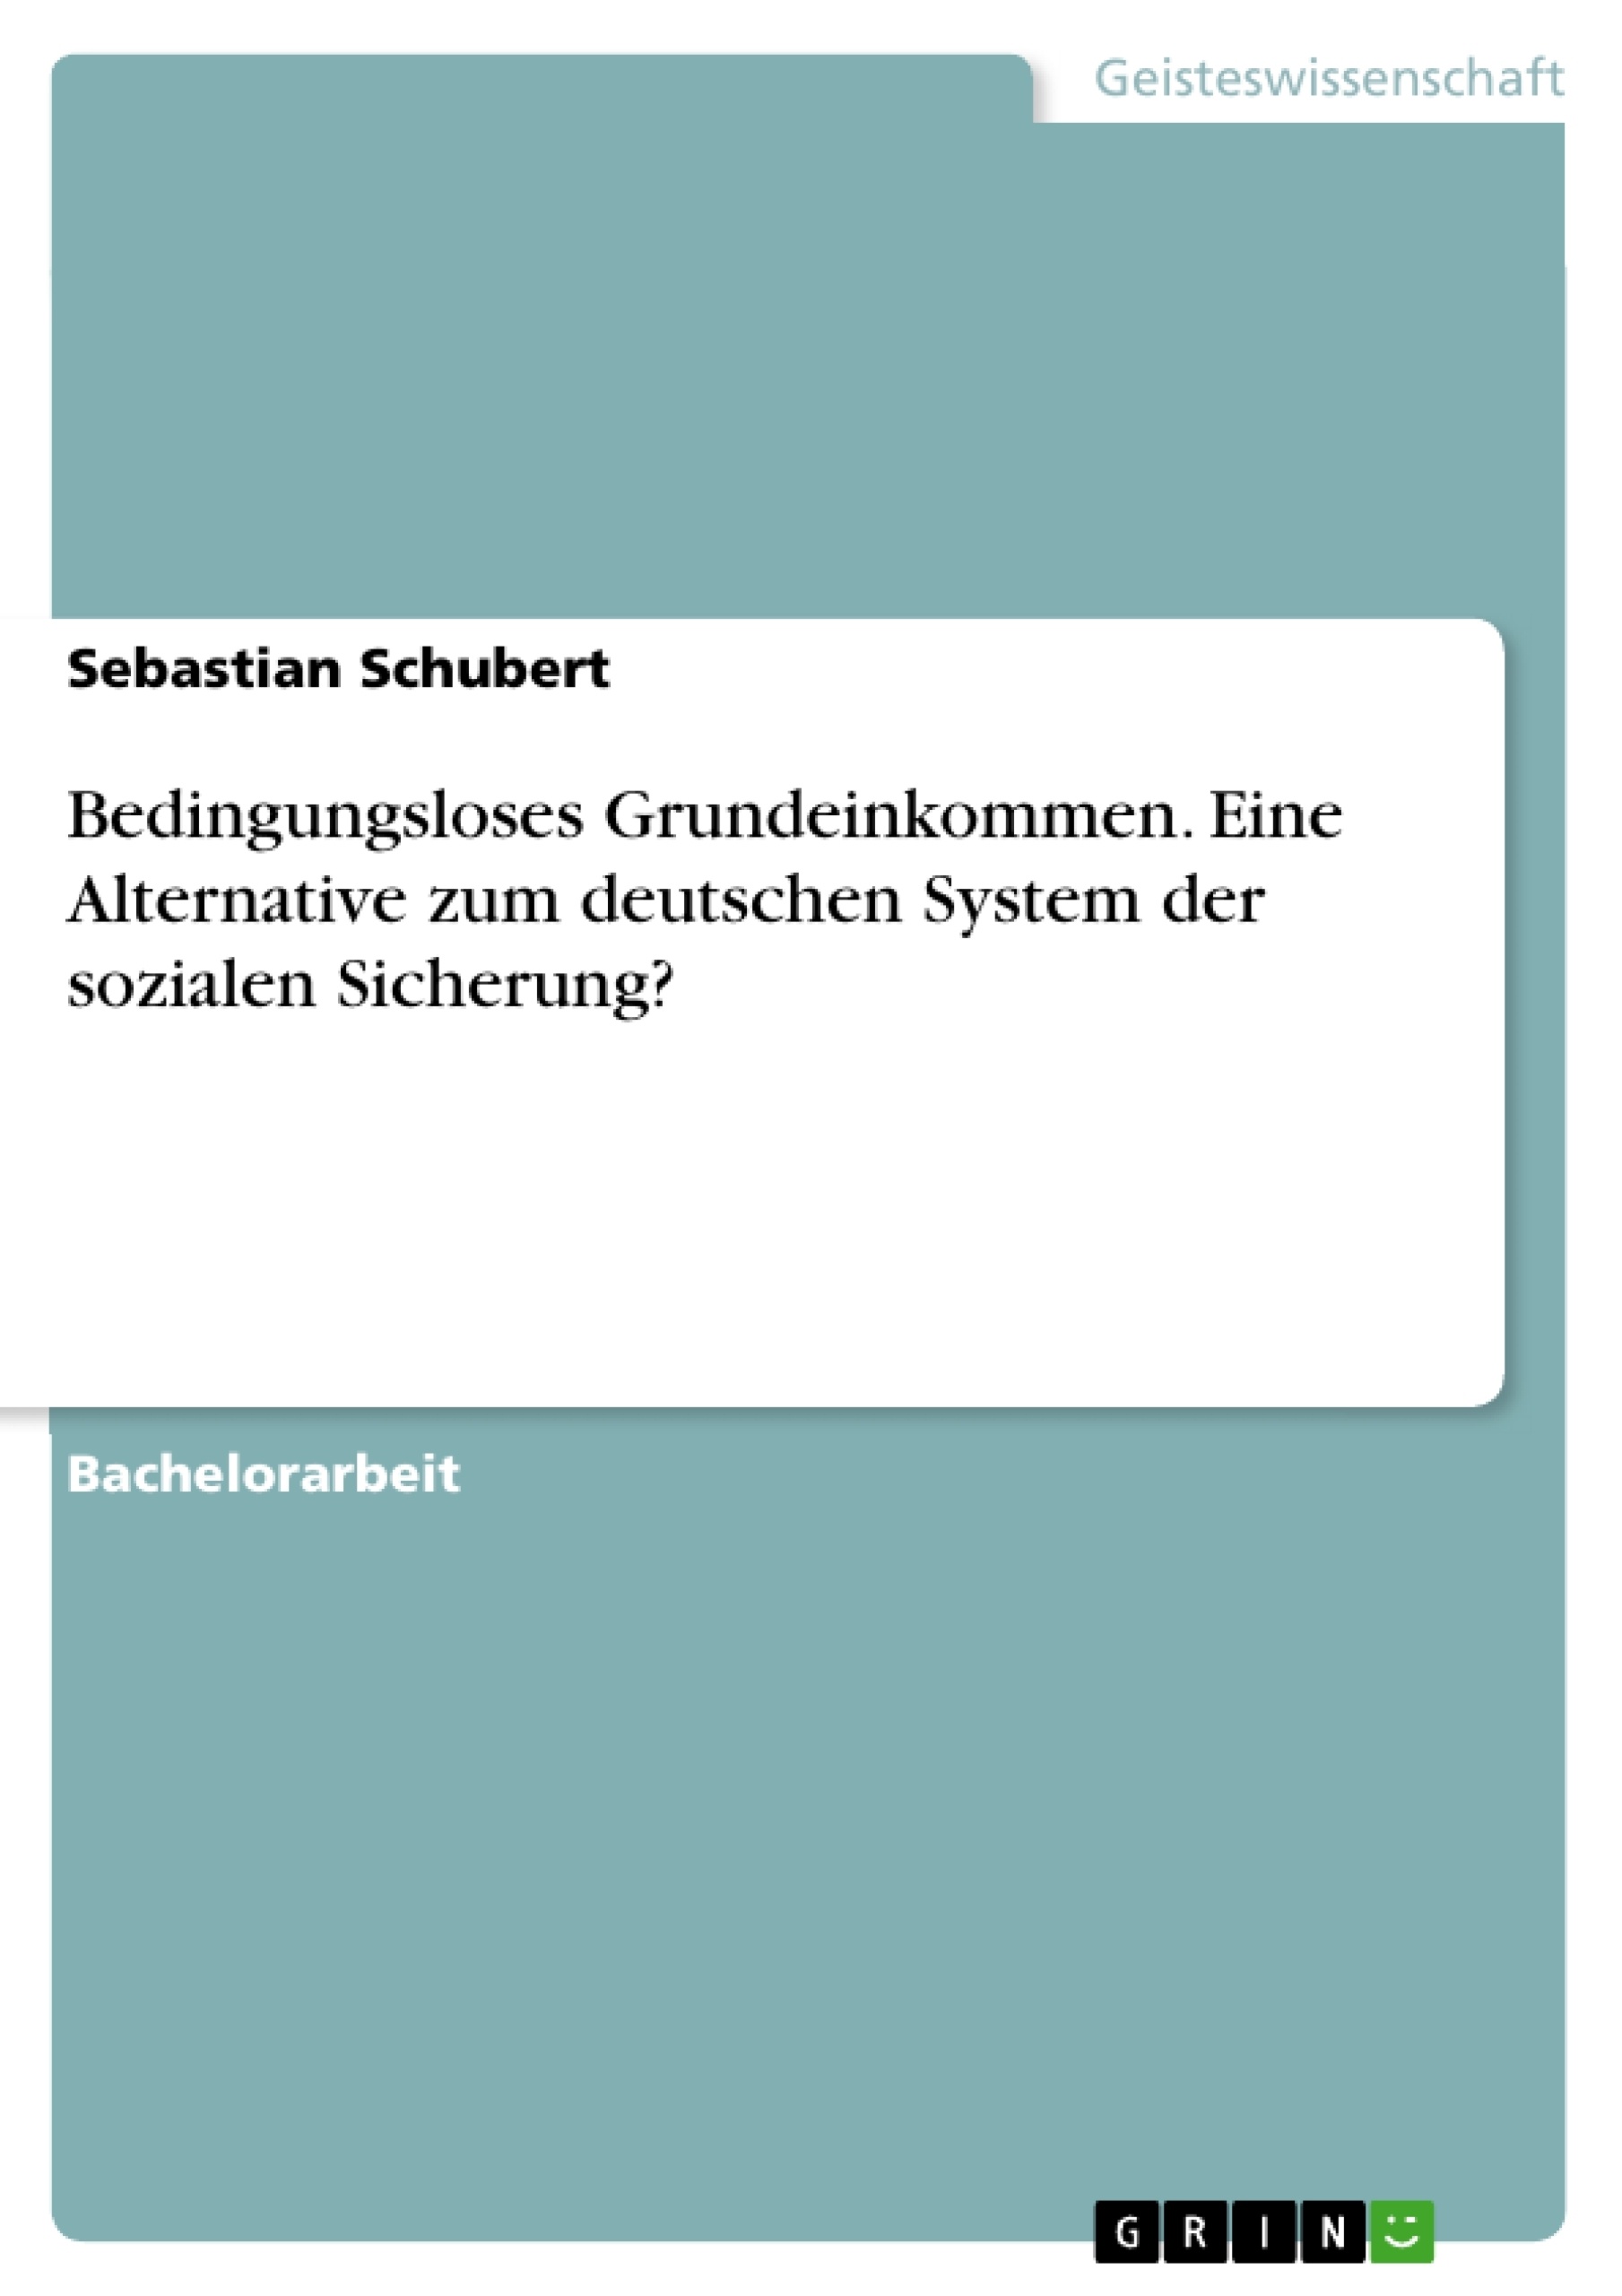 Title: Bedingungsloses Grundeinkommen. Eine Alternative zum deutschen System der sozialen Sicherung?